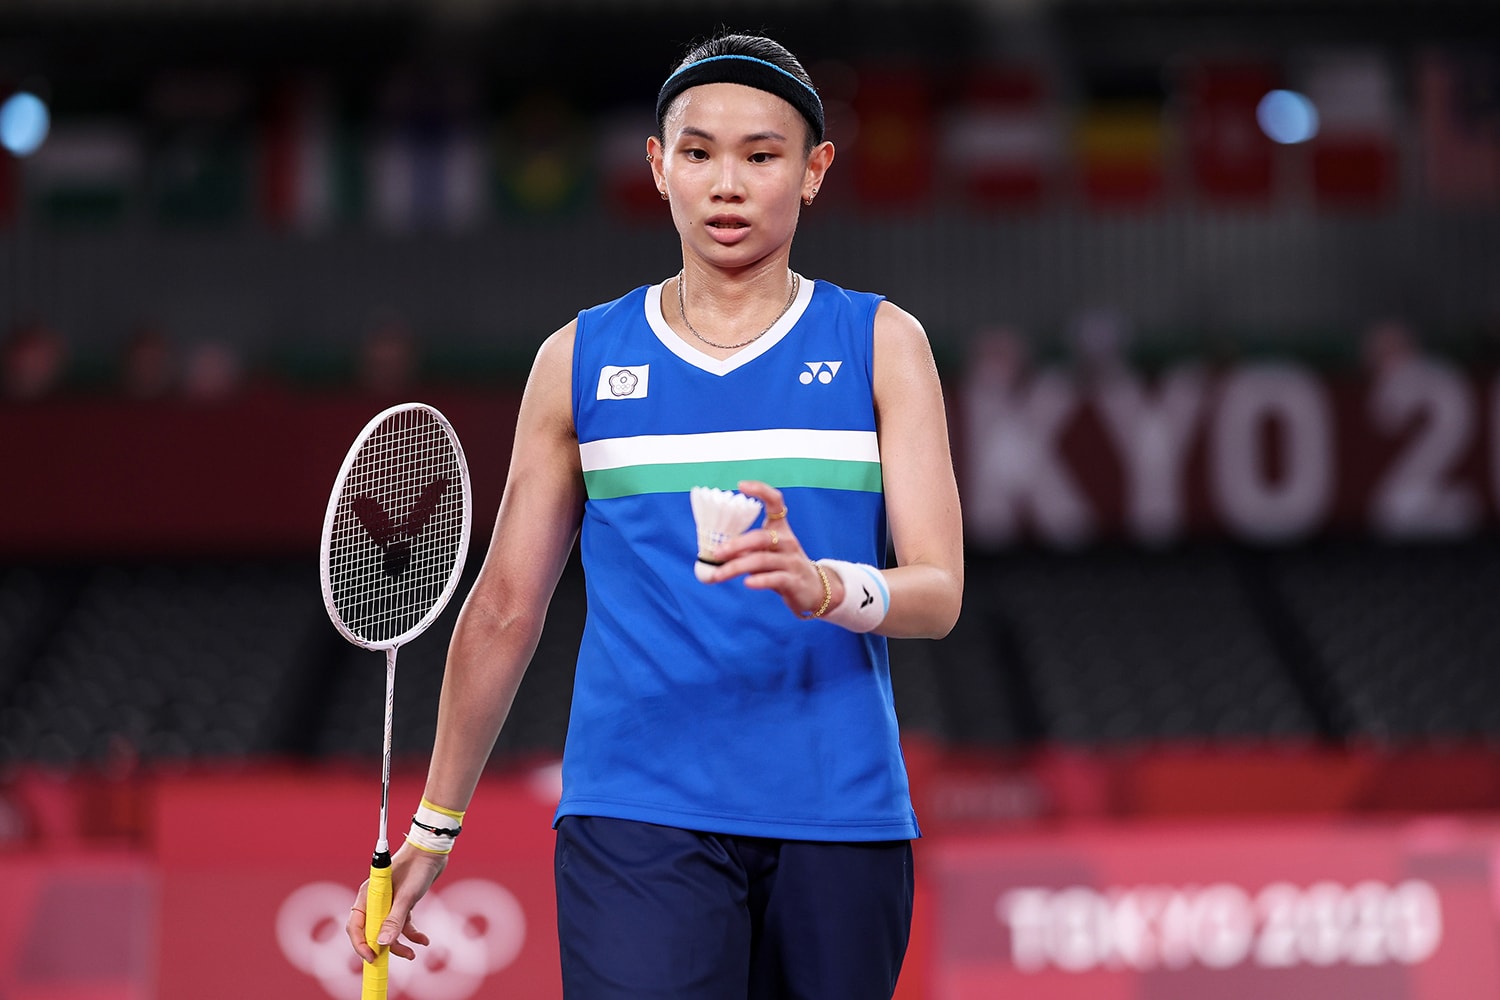 東京奧運「羽球女單」項目由中國隊陳雨菲奪金 中華隊戴資穎拿下銀牌